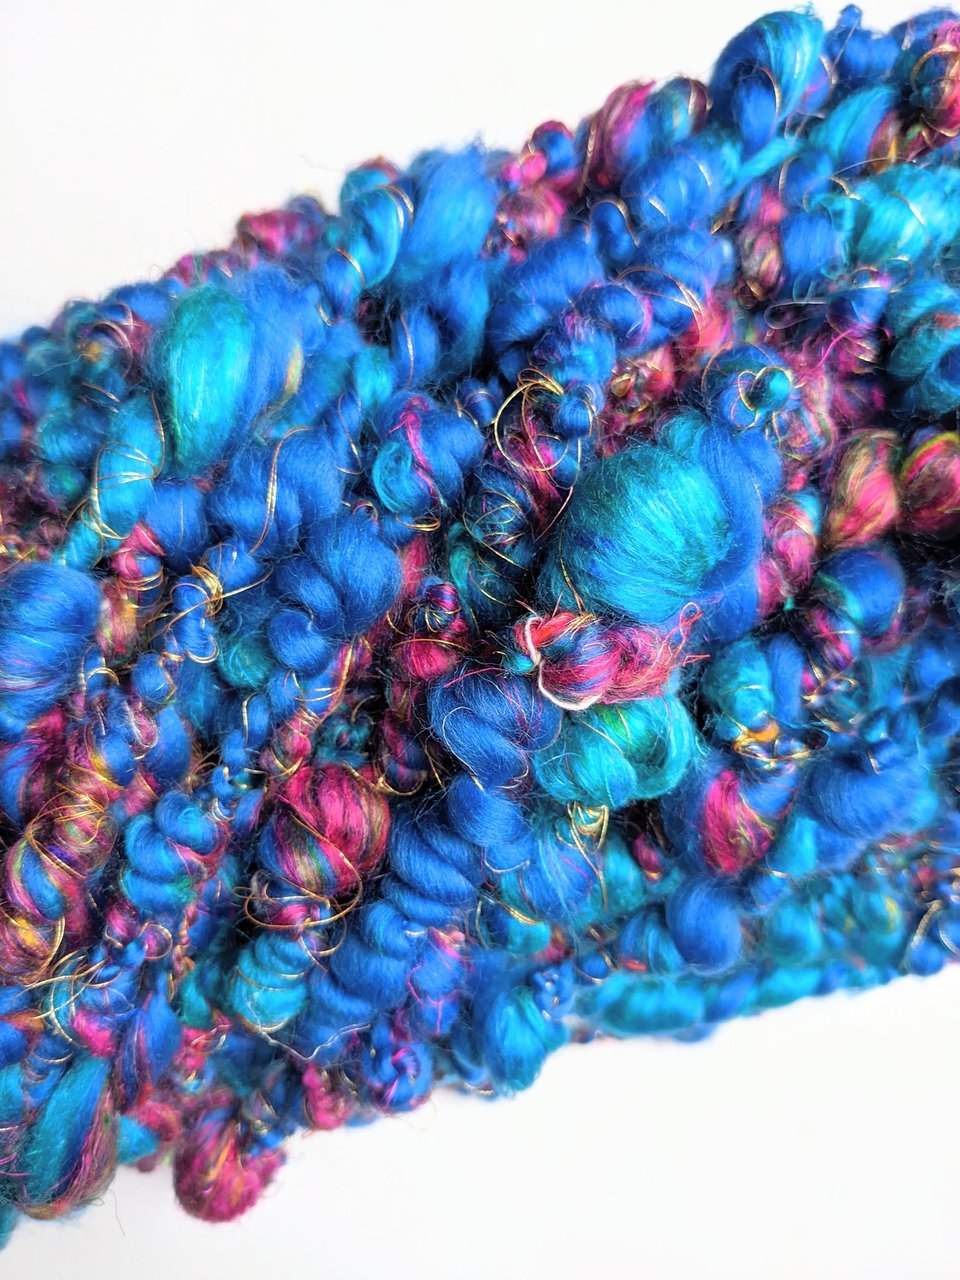 Handspun Art Yarn | Merino / Silk / Sari Silk | Coil Yarn